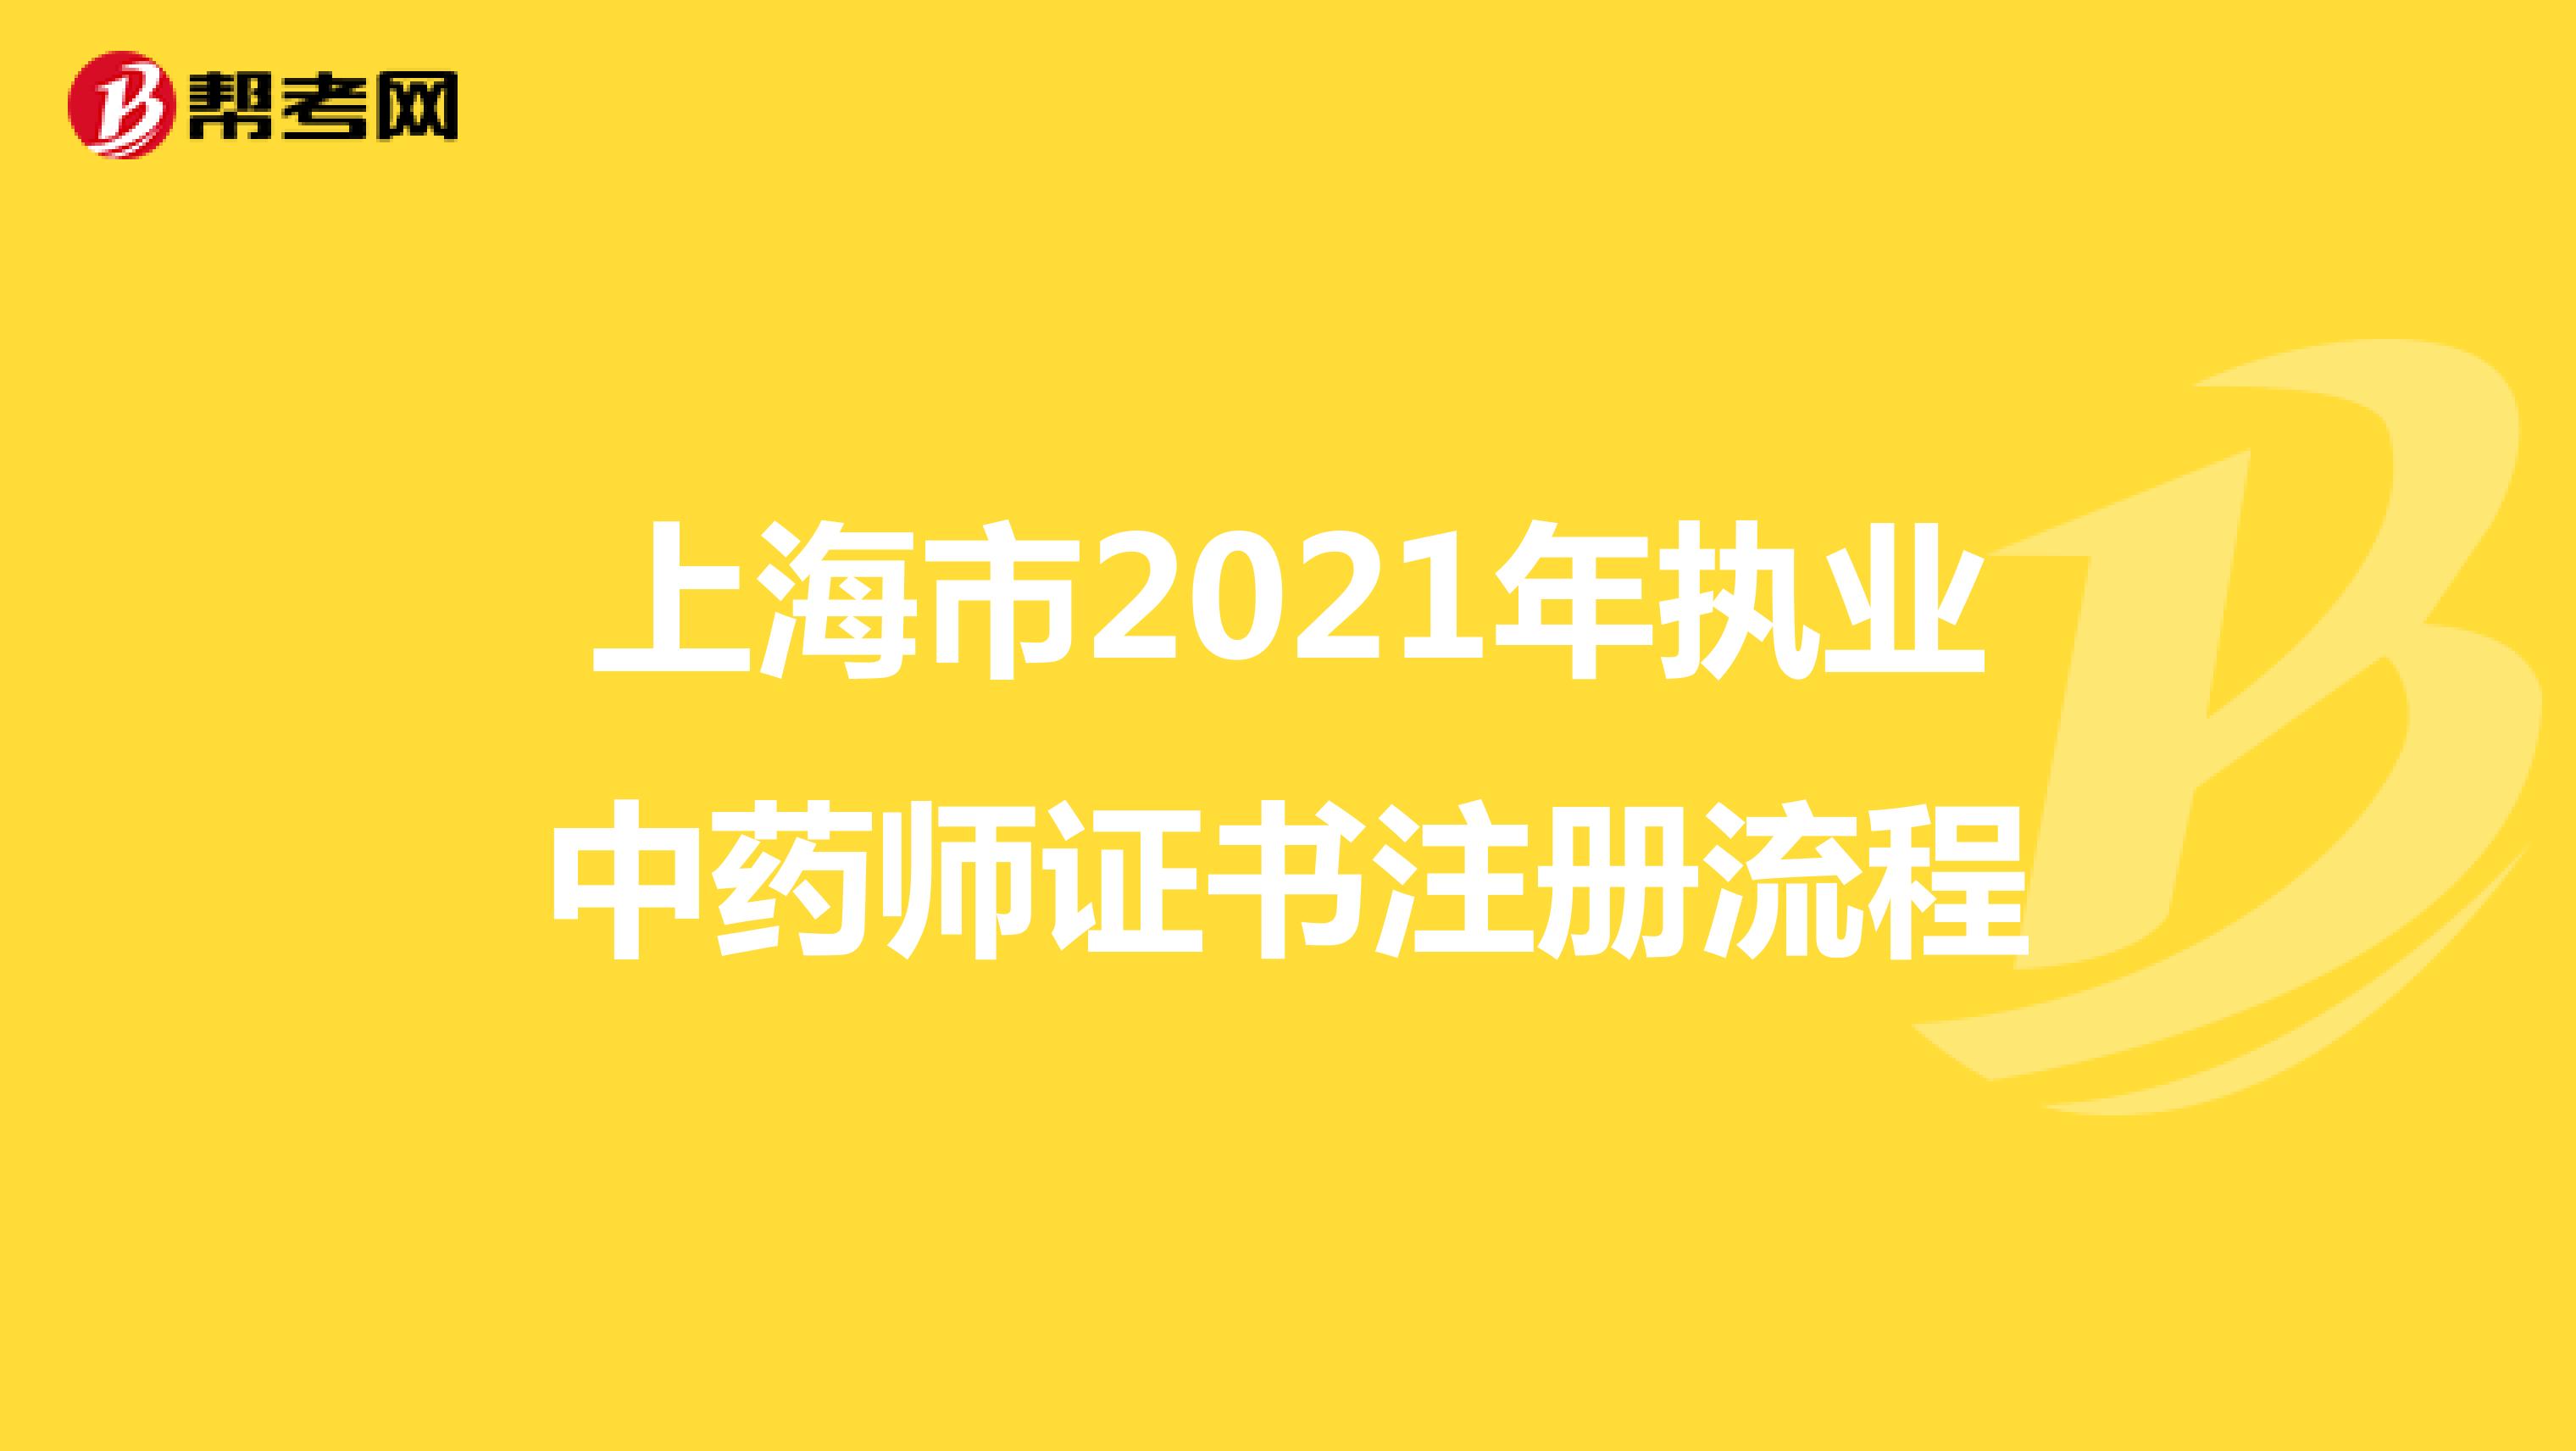 上海市2021年执业中药师证书注册流程